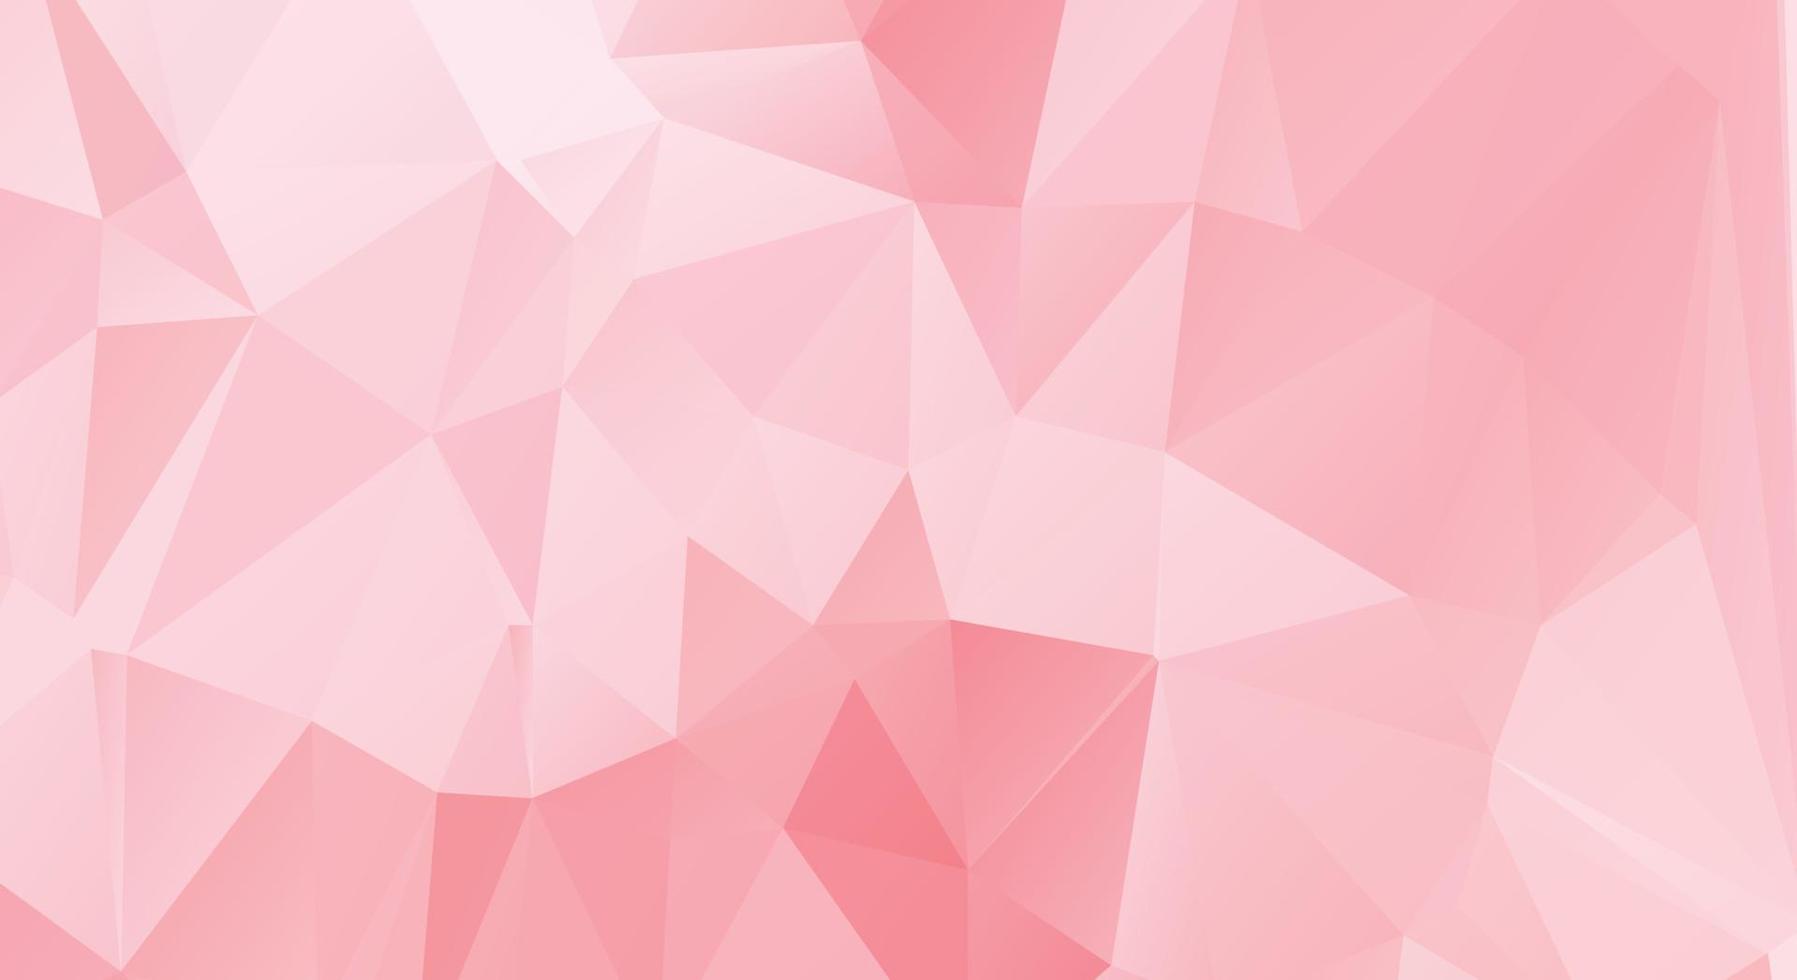 abstract roze kleur veelhoek achtergrond ontwerp, abstract meetkundig origami stijl met verloop. presentatie,website, achtergrond, omslag, spandoek, patroon sjabloon vector